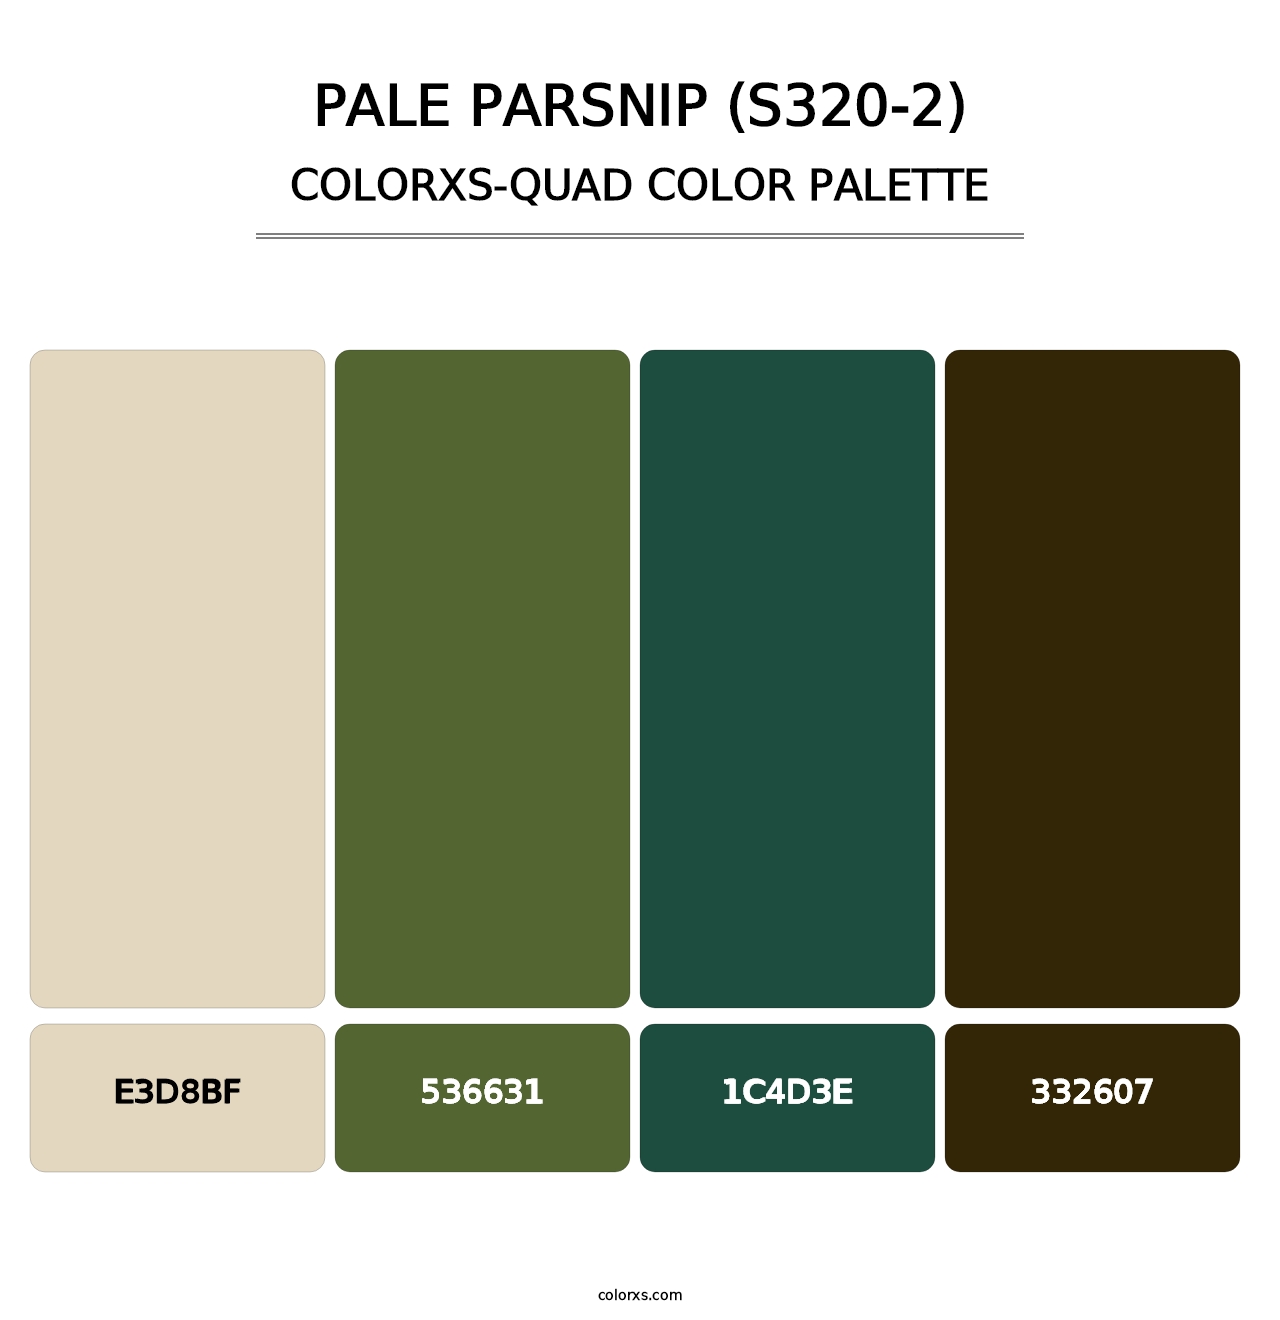 Pale Parsnip (S320-2) - Colorxs Quad Palette